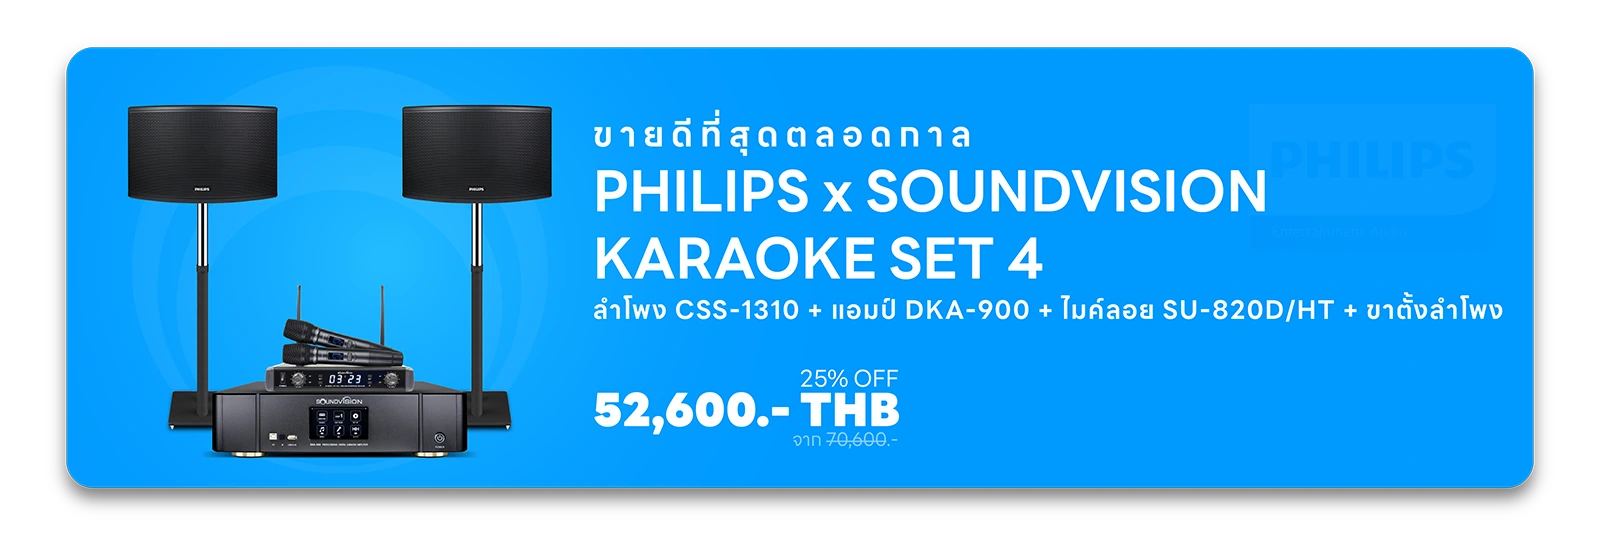 เครื่องเสียงคาราโอเกะ เครื่องเสียงคาราโอเกะ (Karaoke) ชุดคาราโอเกะ ของแท้ จาก JBL SOUNDVISION PHILIPS รับบัตรเครดิต ส่งฟรี!! ทั่วประเทศ ยินดีให้คำปรึกษาเรื่องระบบเสียง